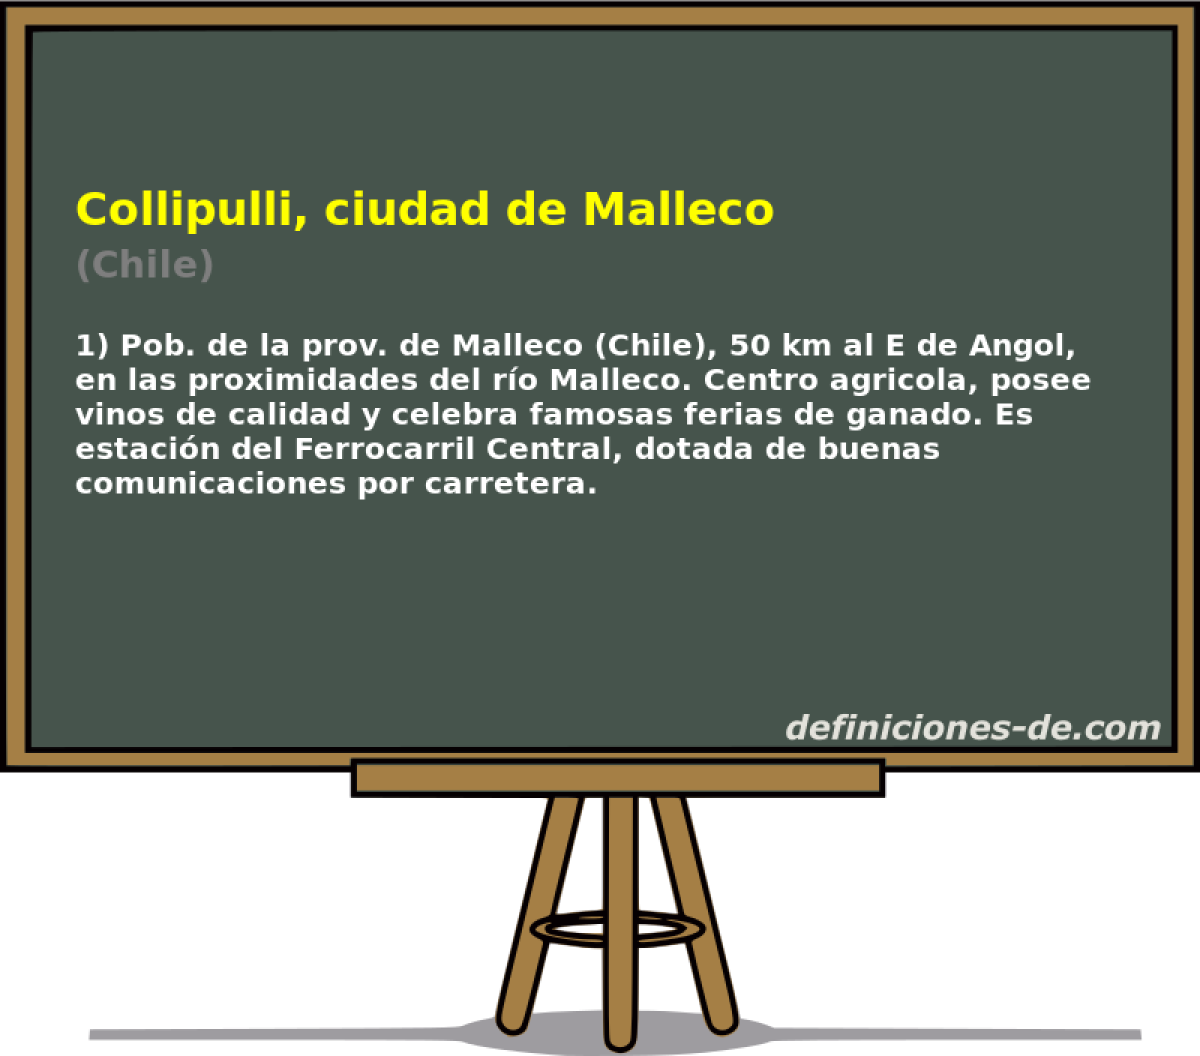 Collipulli, ciudad de Malleco (Chile)